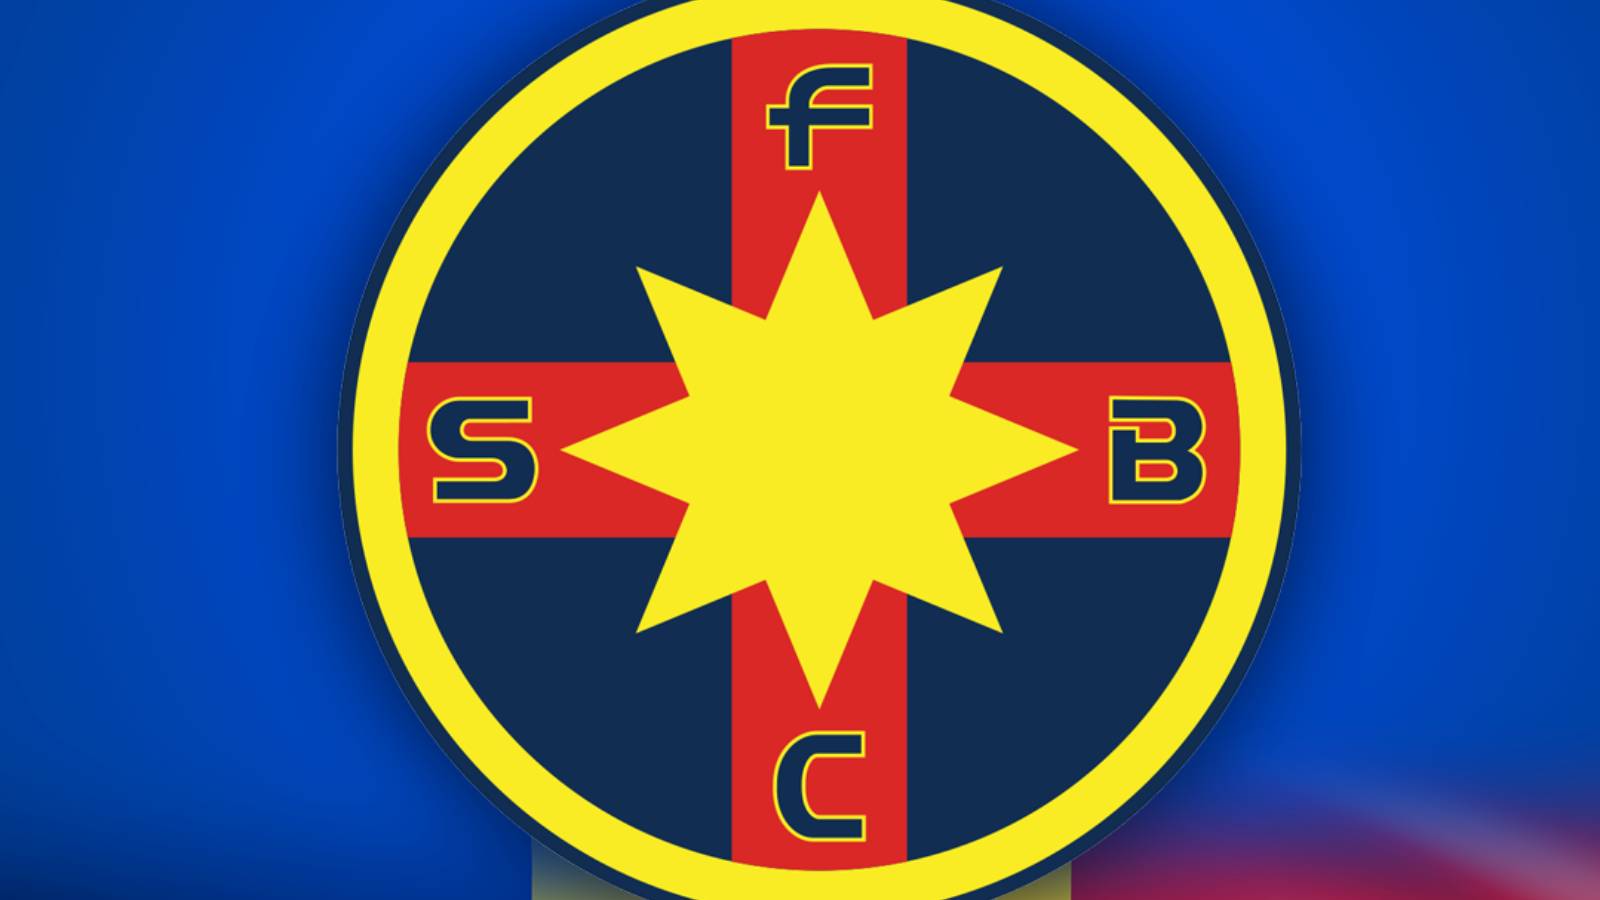 FCSB Anunturile ULTIMA ORA Inaintea Meciului CSKA Sofia VIDEO